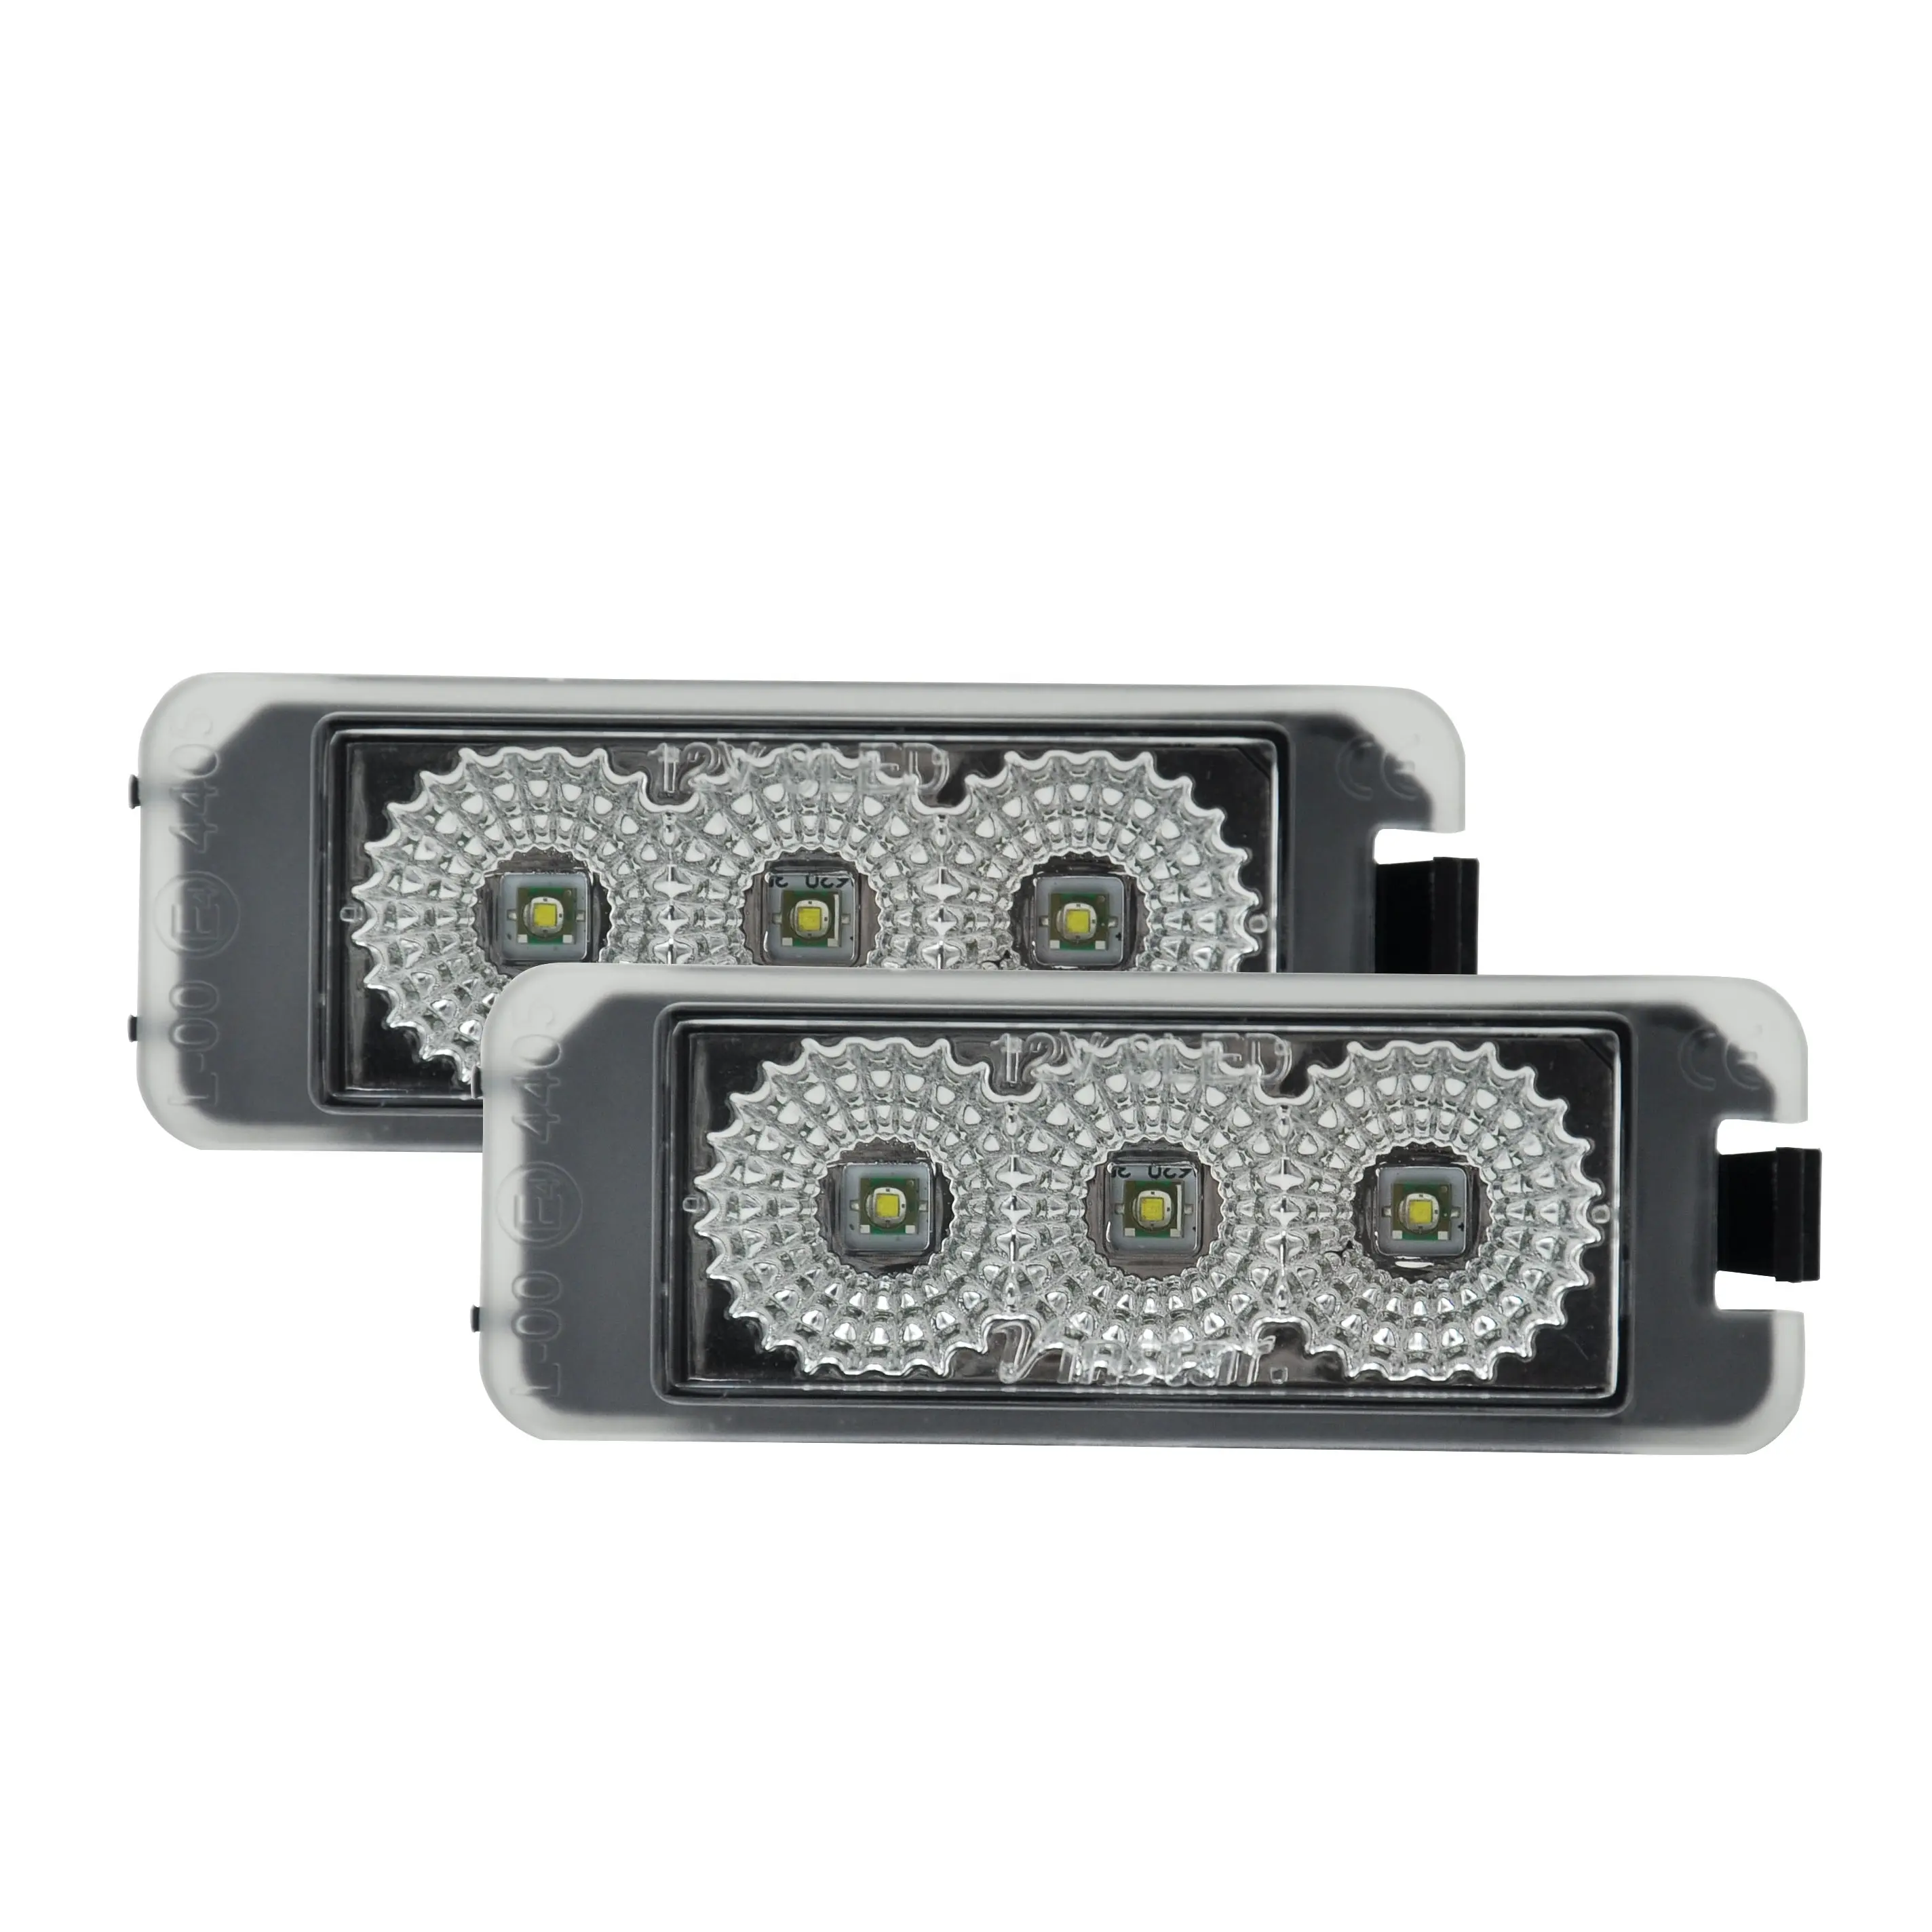 Ailead Standard 2PCS No Error Accessoires de voiture Lampe de plaque d'immatriculation à LED pour VW Amarok Eos Golf6/Golf7 Gol 4 3D/5D Golf 5 3D/5D